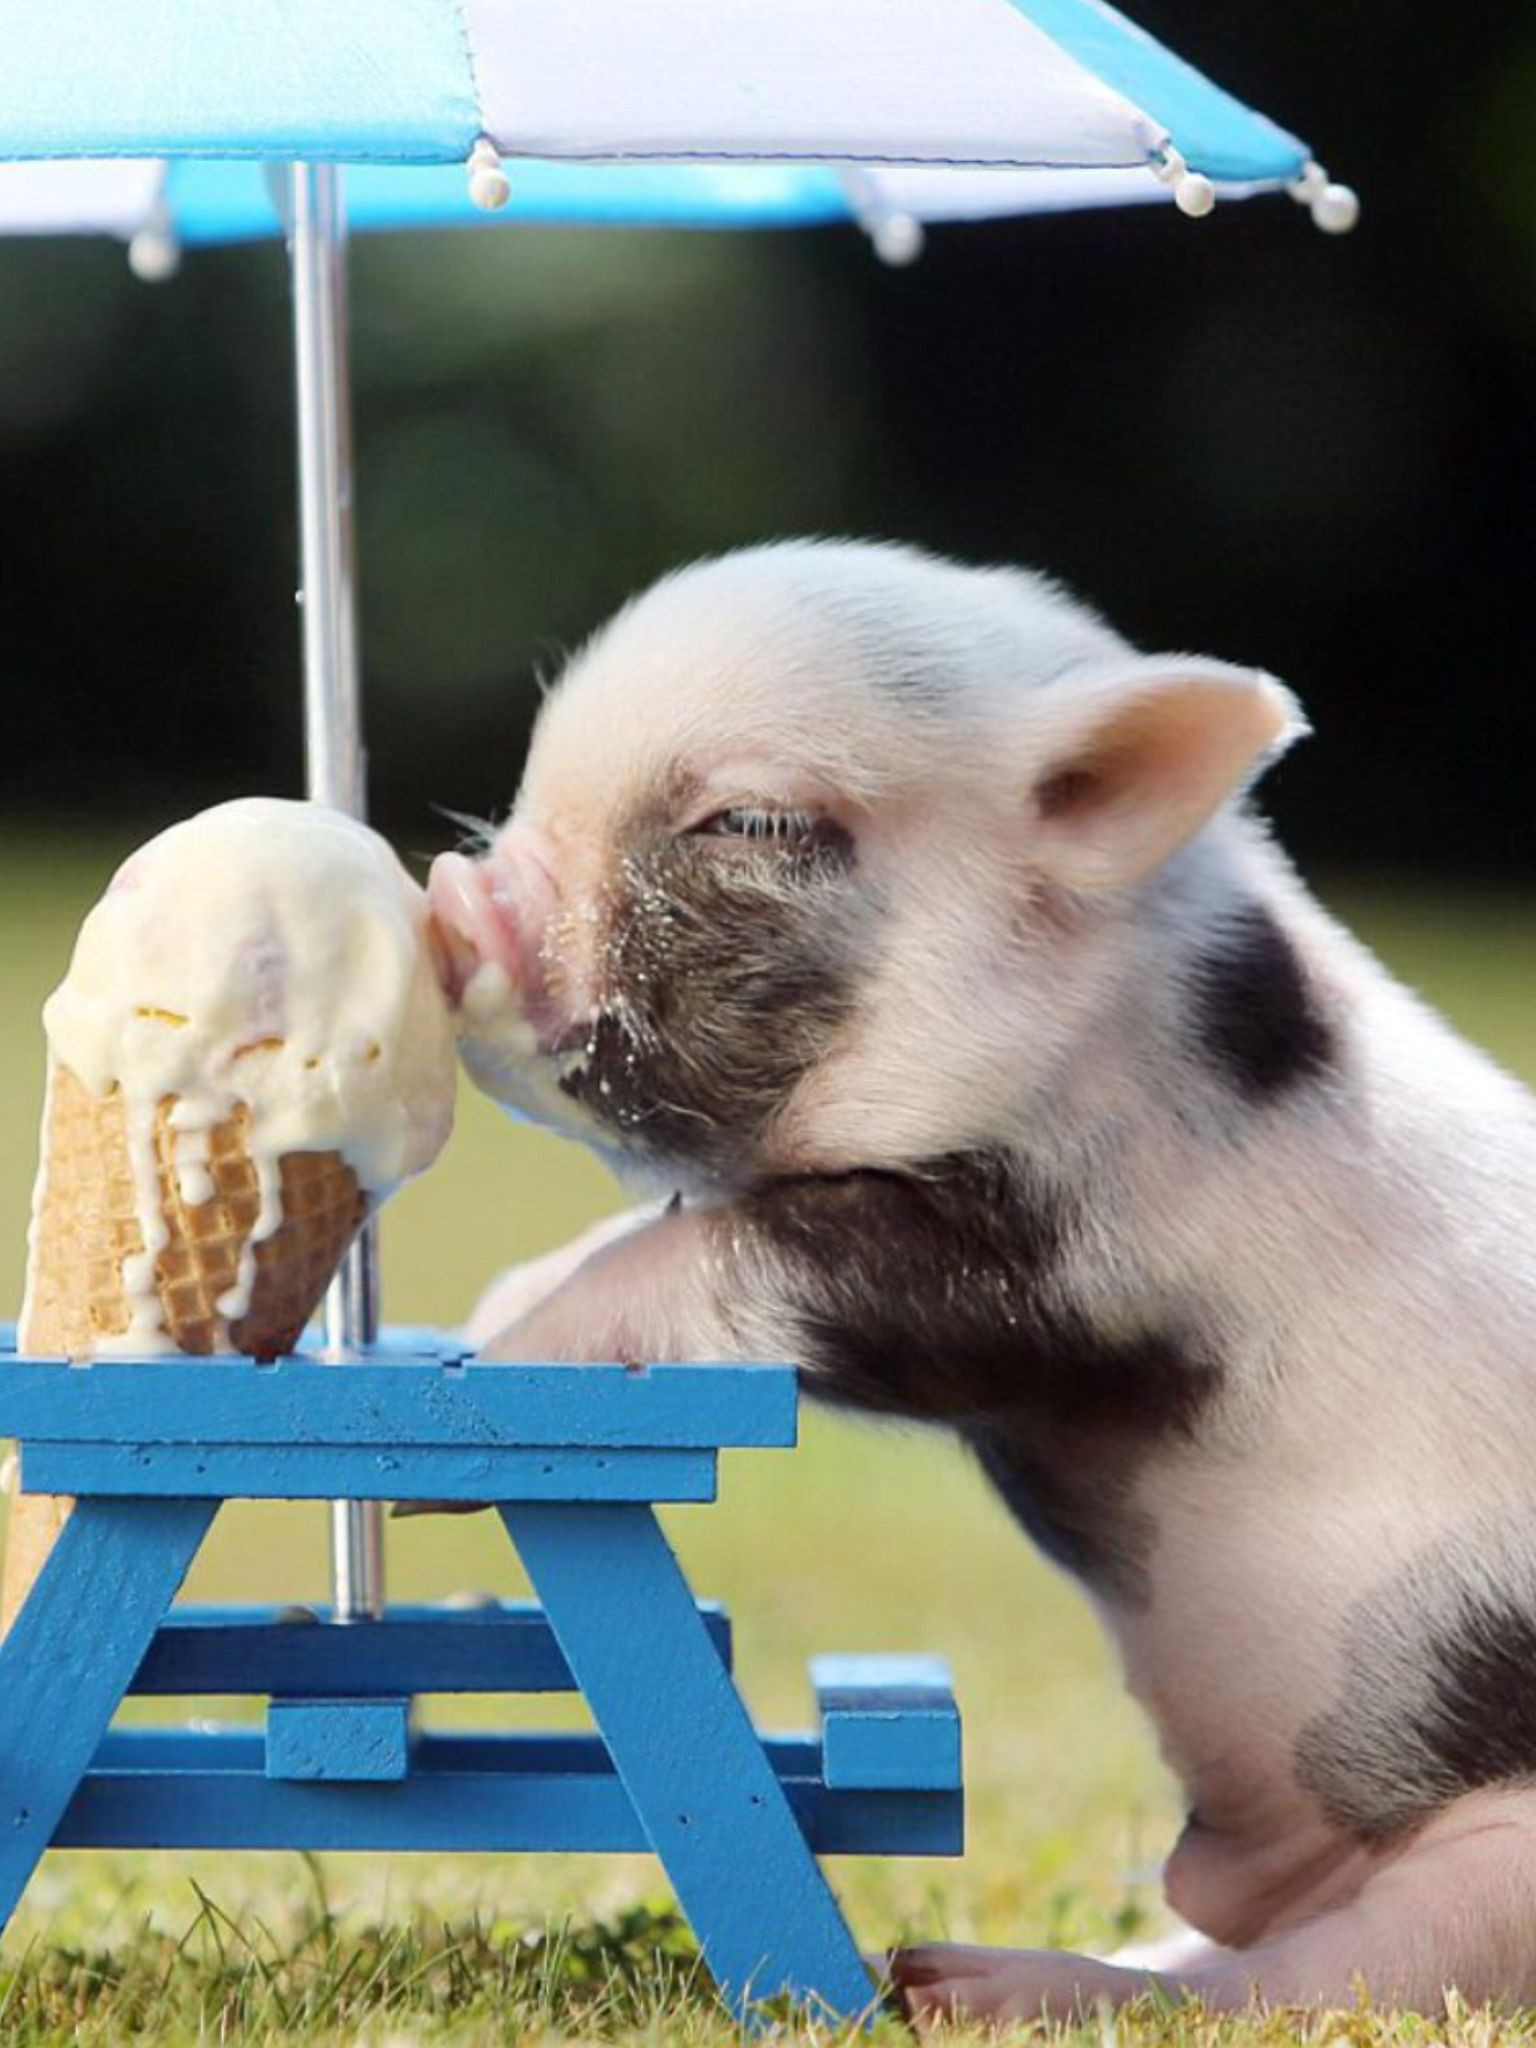 Pig Images Farm Animals